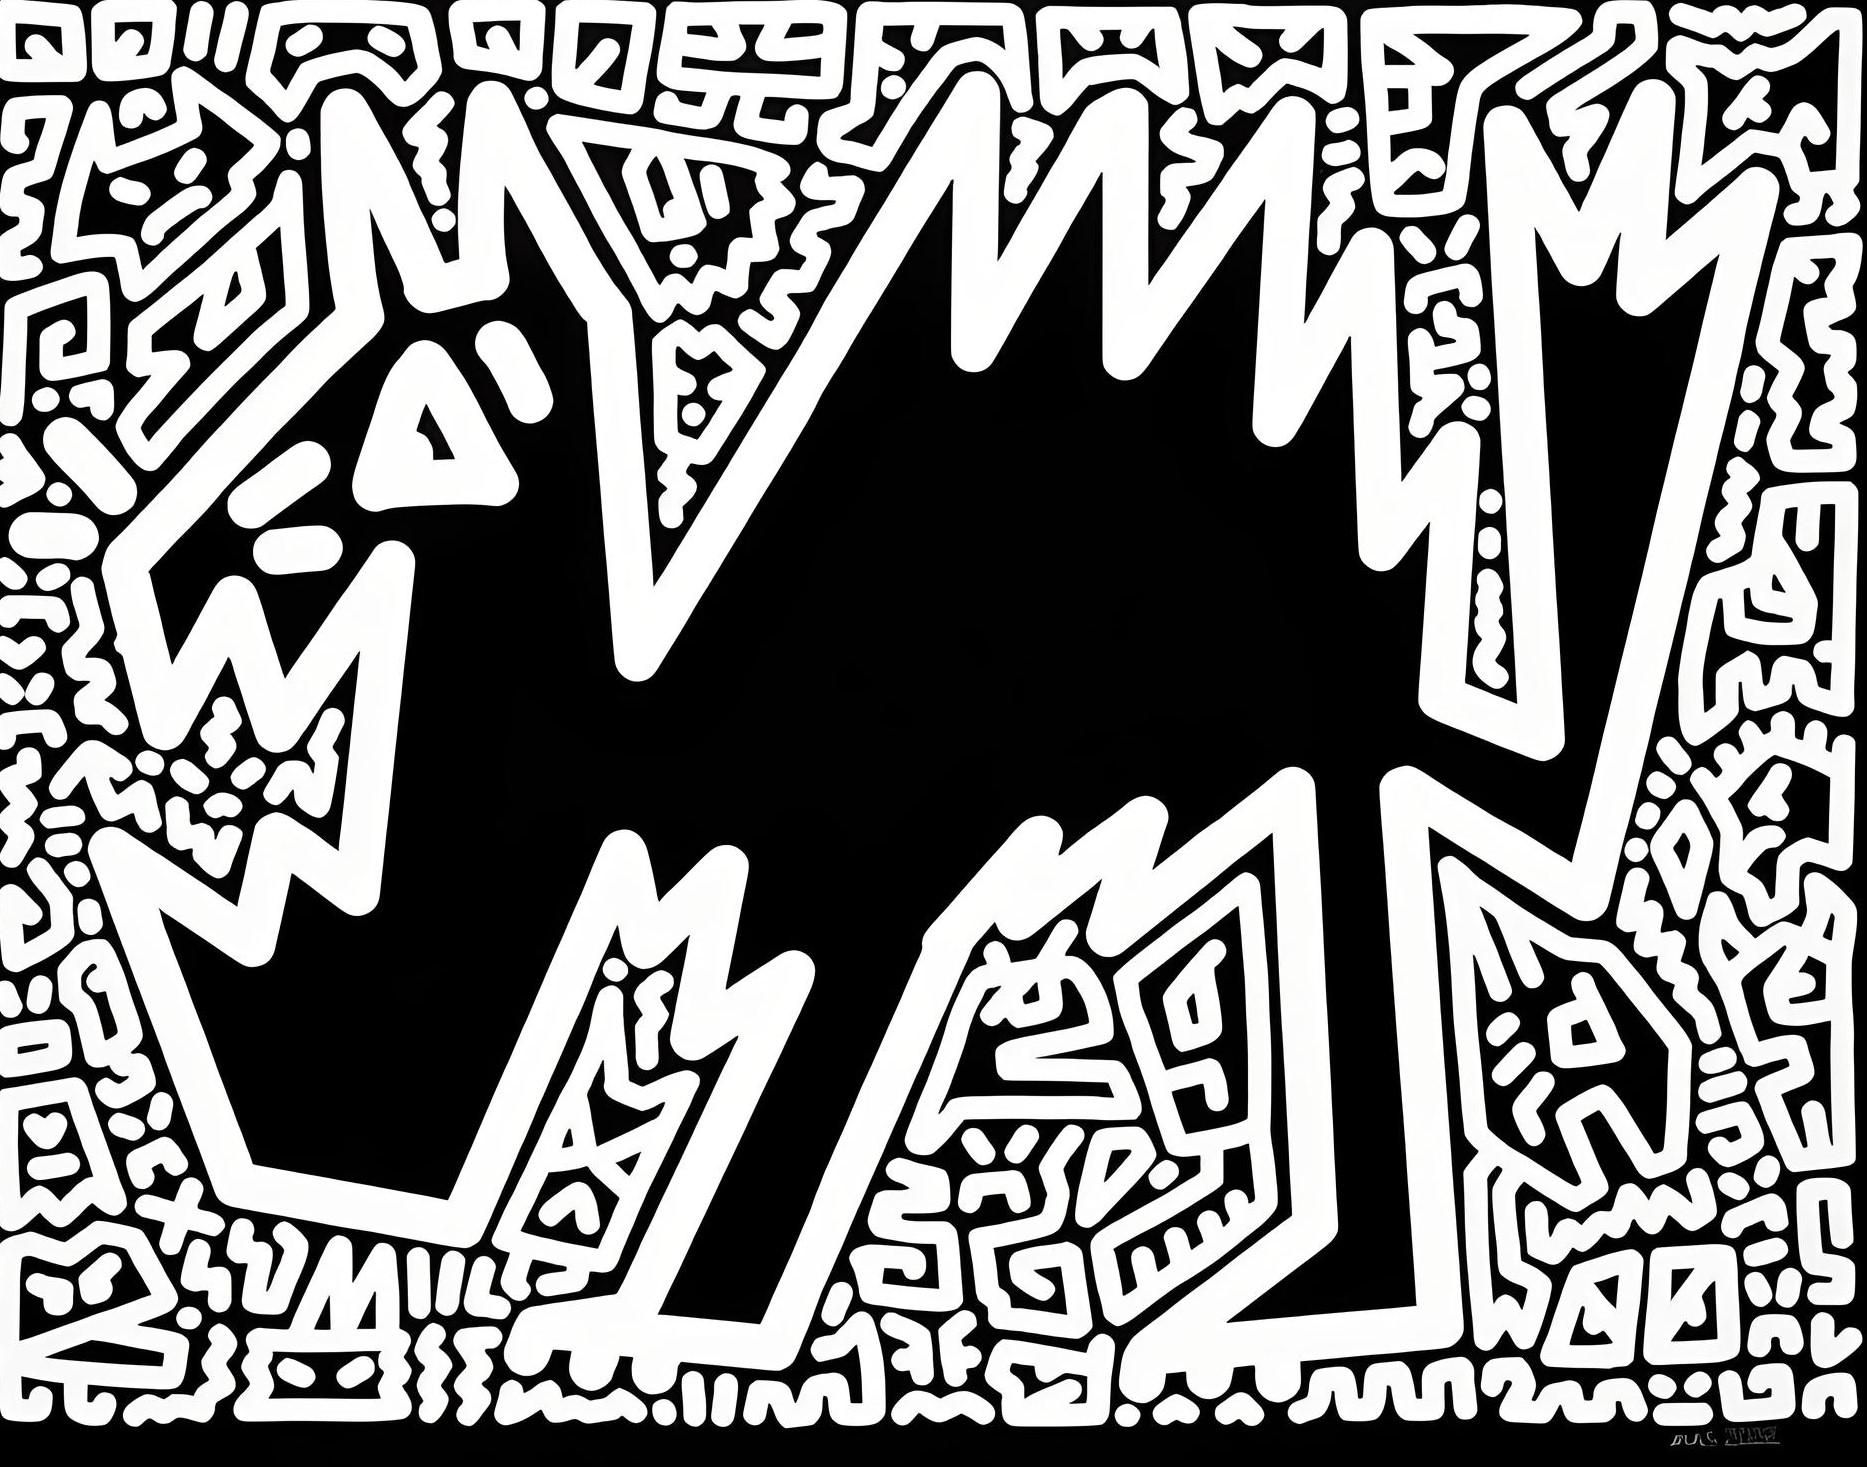 Wolle und Meow (Streetart), Print, von Mr. Doodle